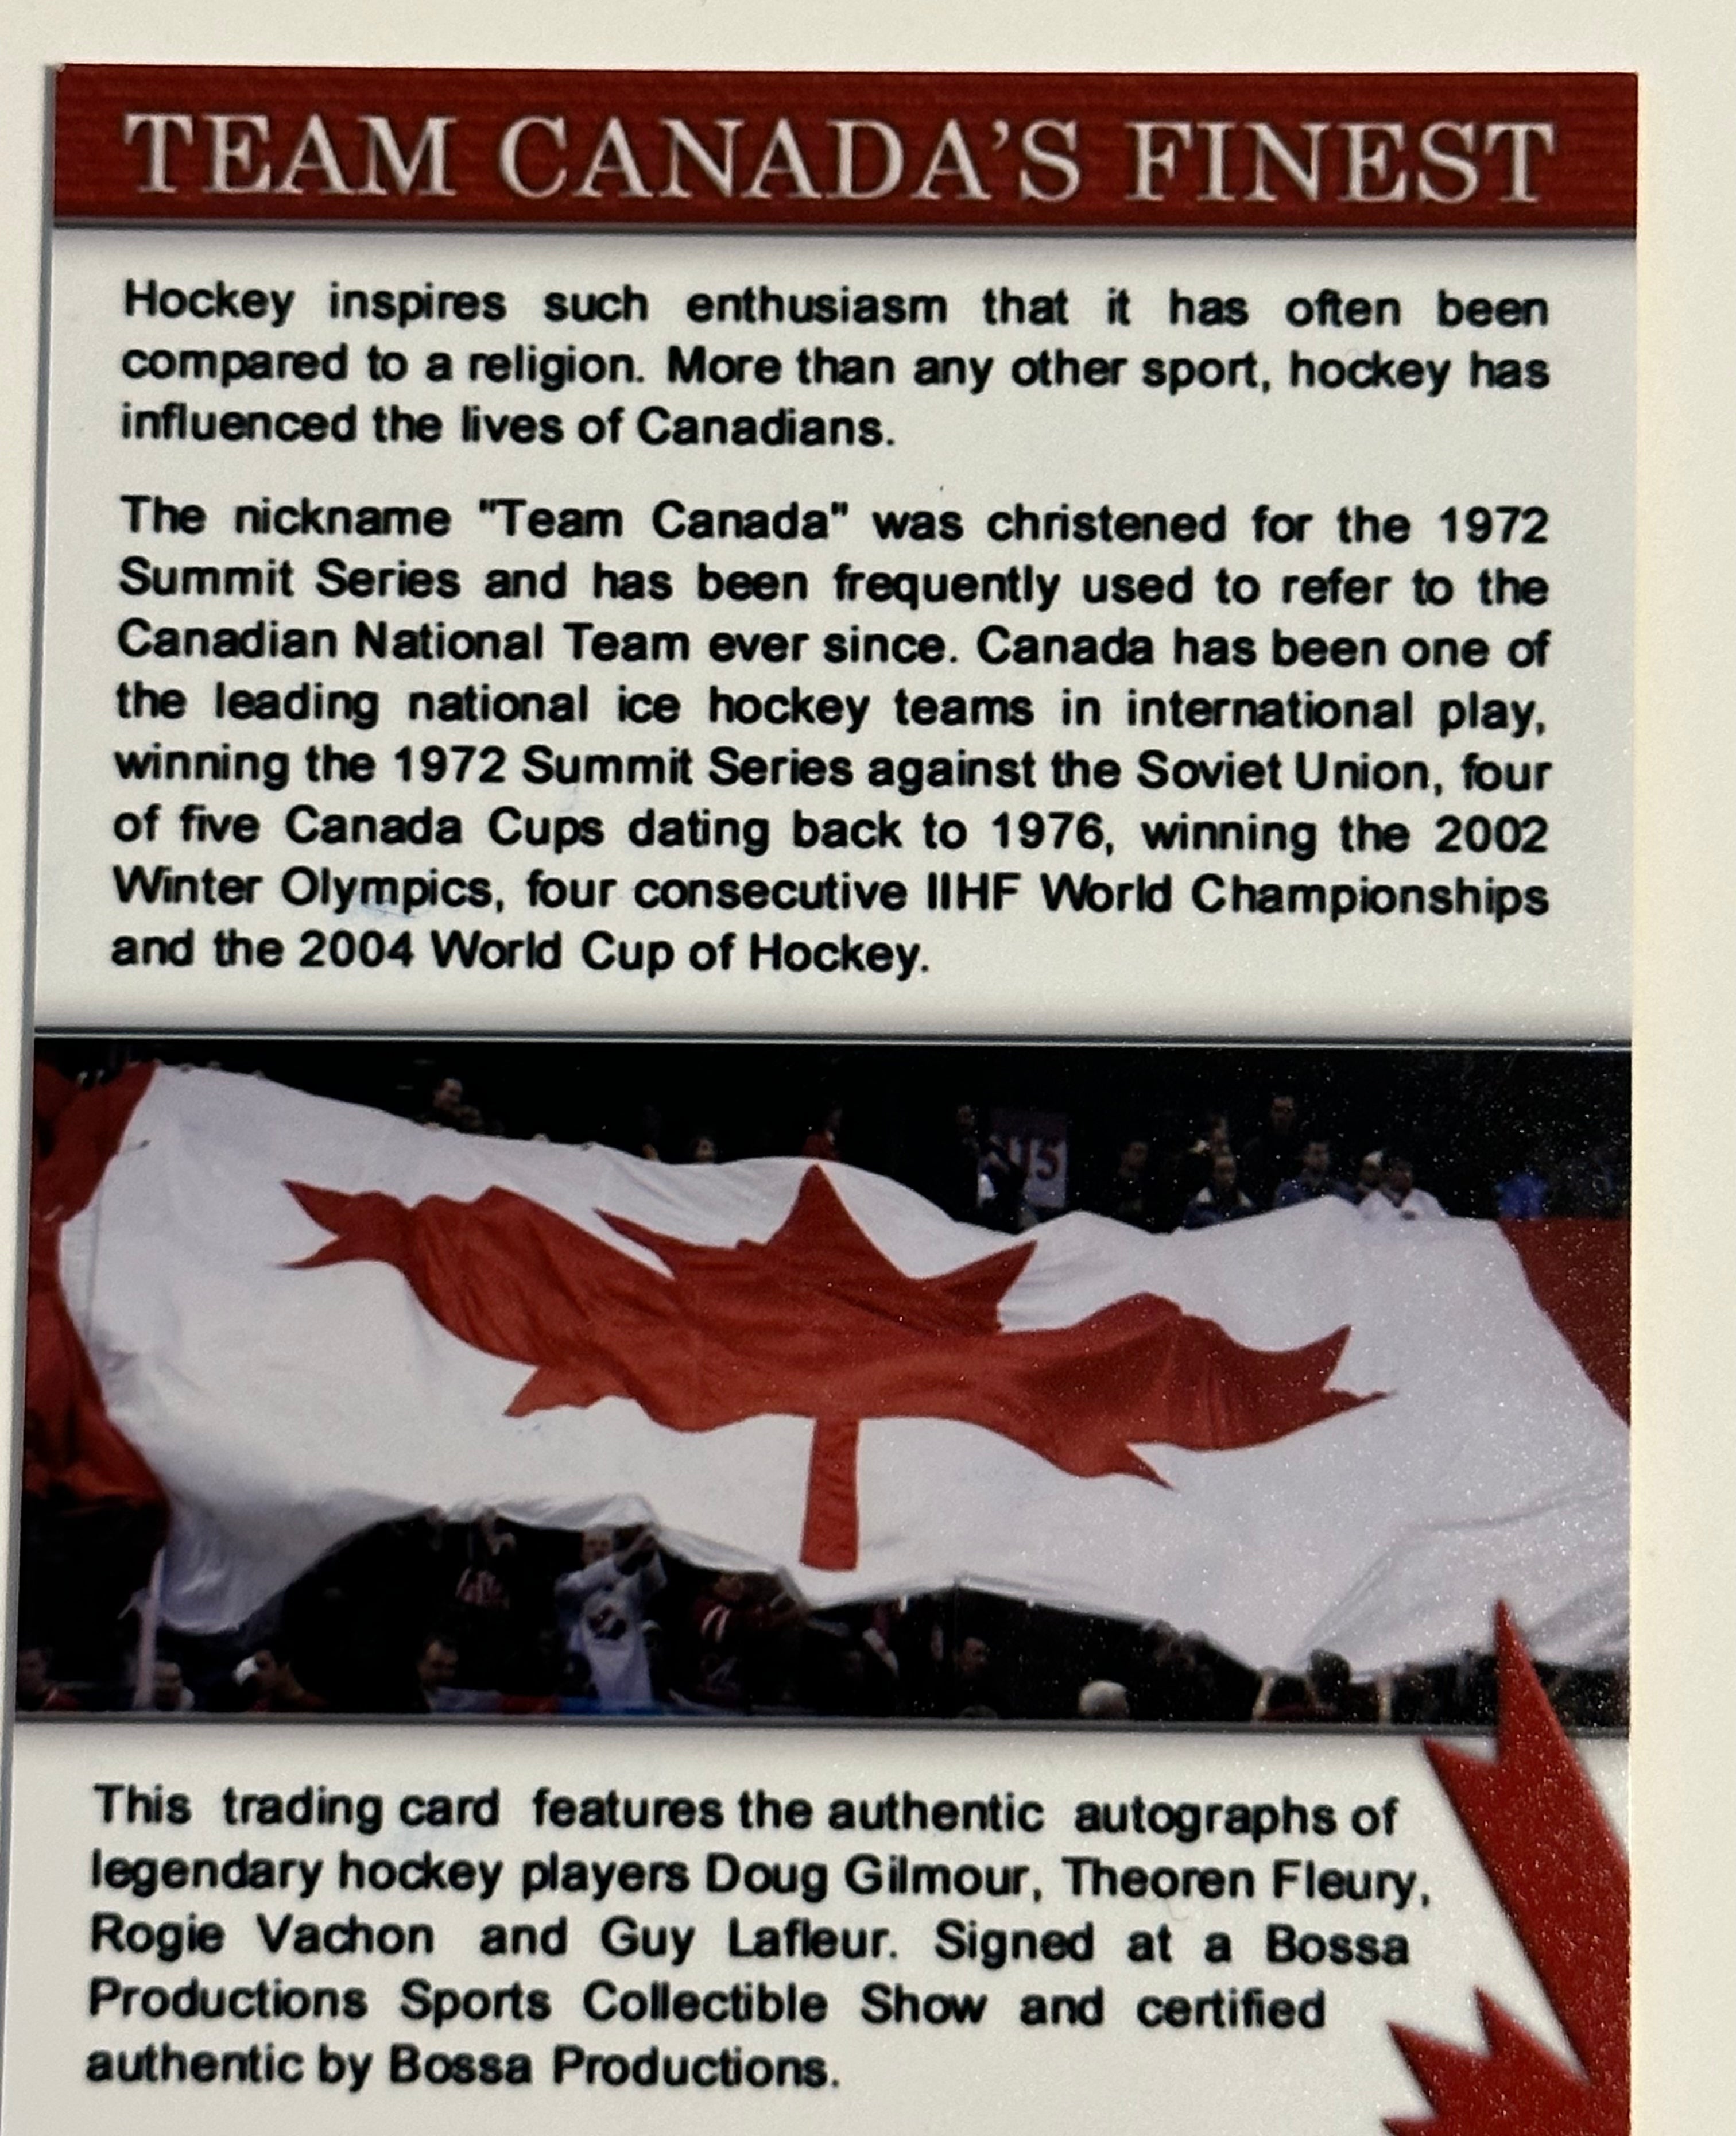 Team Canada hockey rare 24/25 quad autograph card!